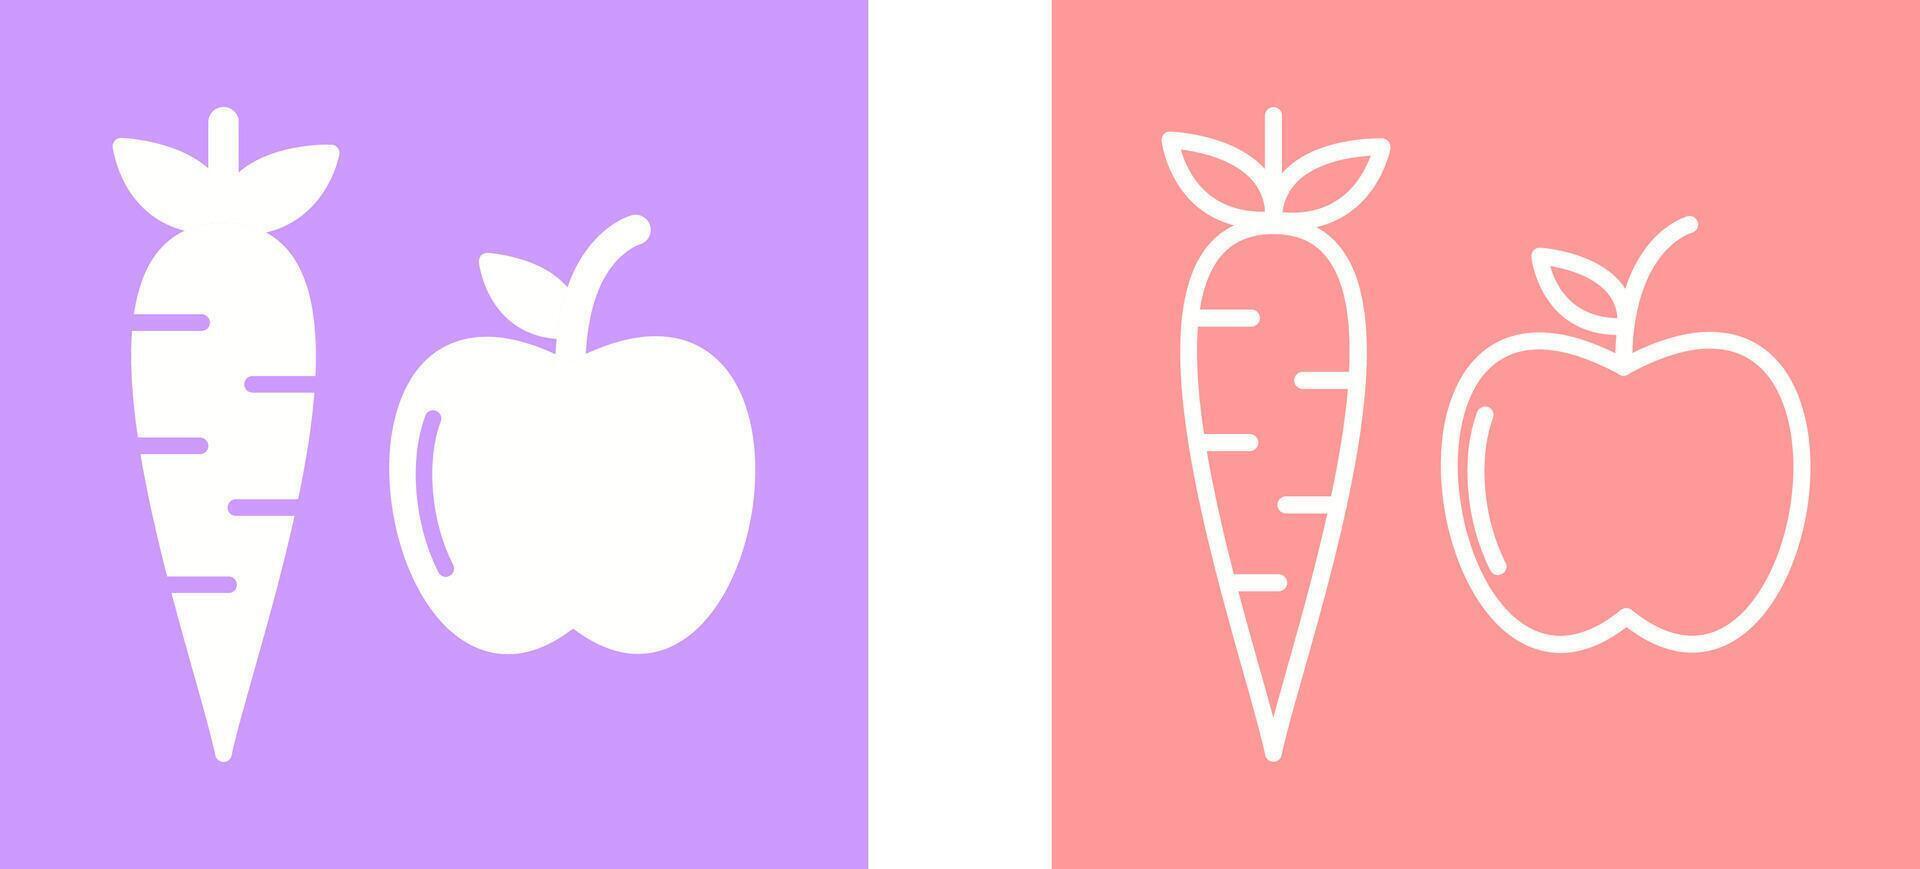 frukt och grönsaker vektor ikon